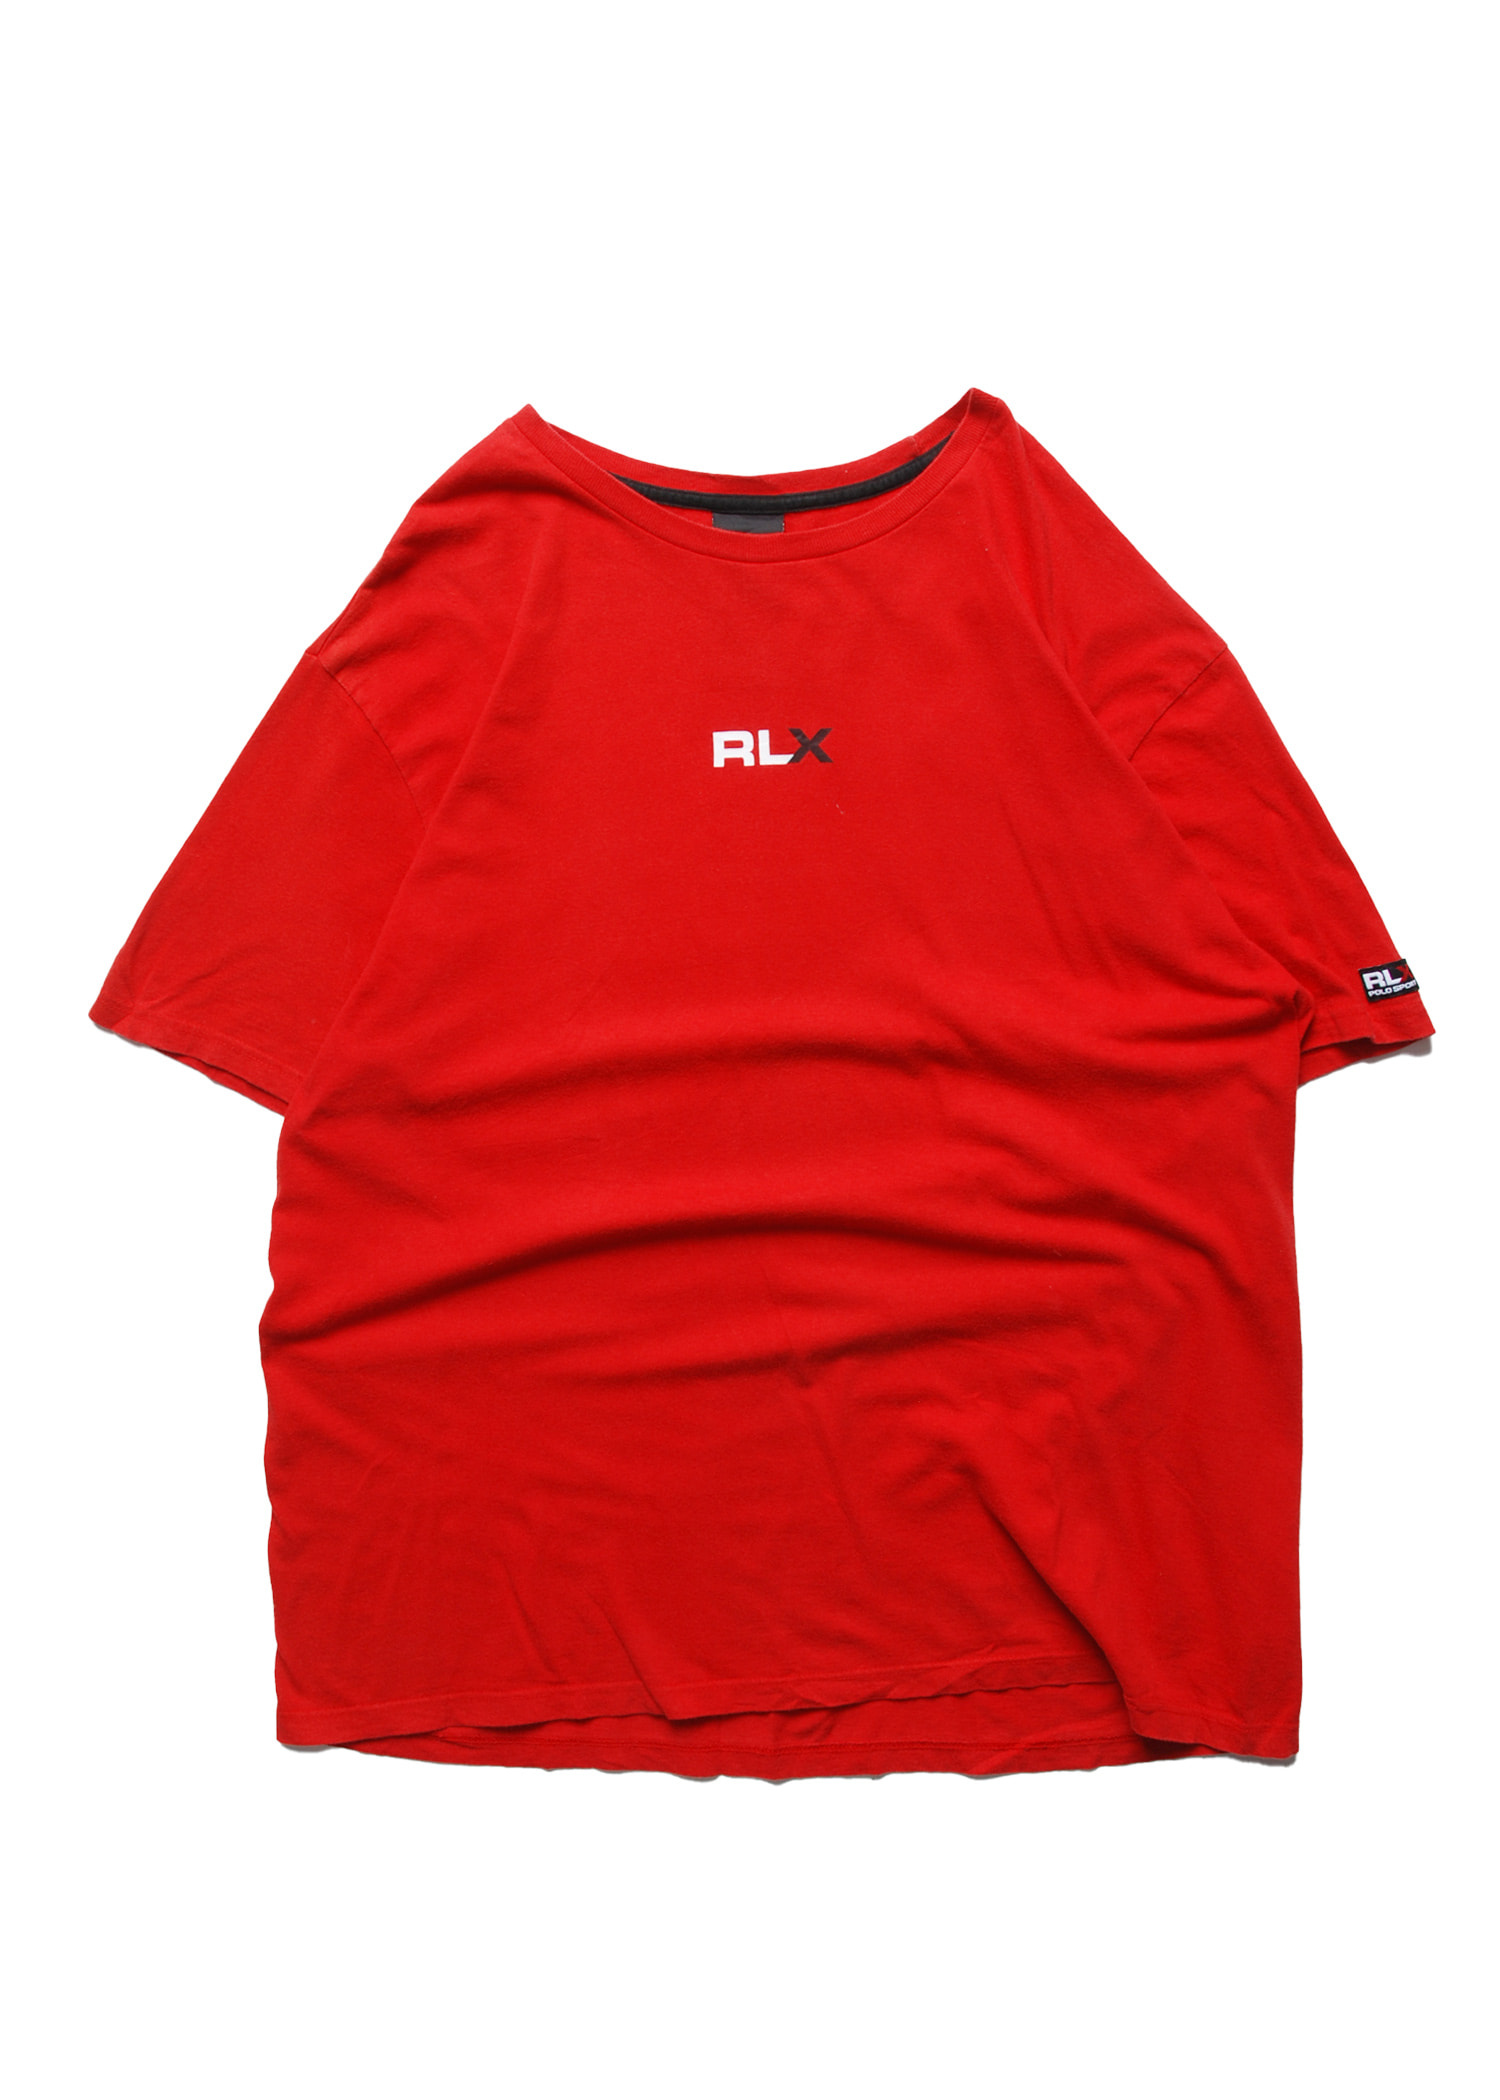 RLX by Ralph Lauren logo t-shirts